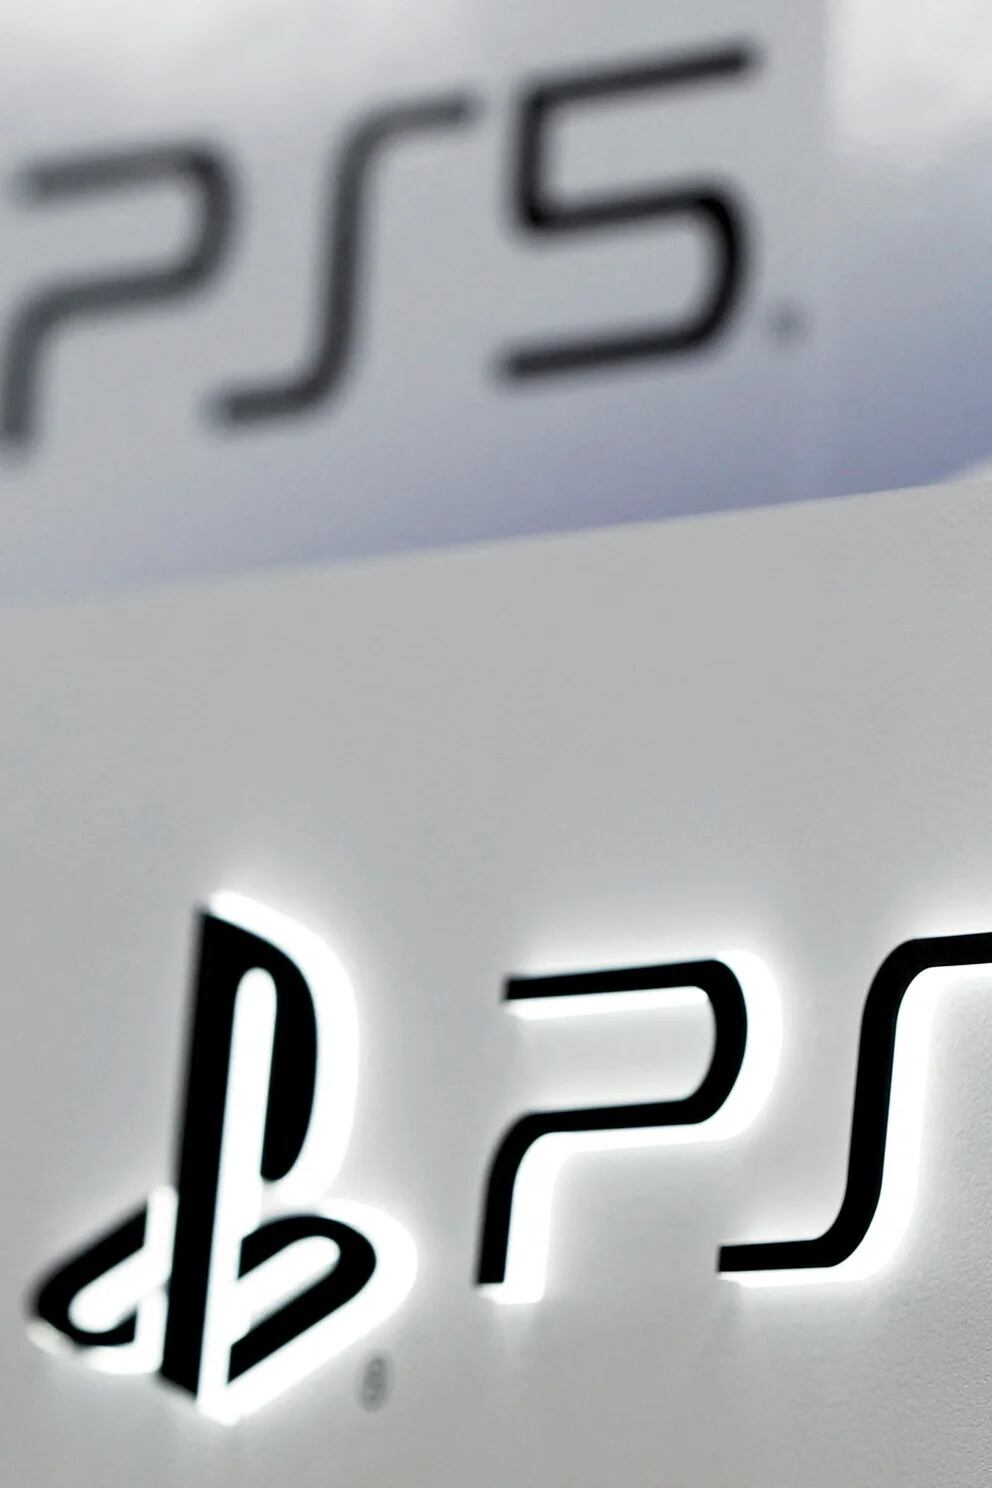 PlayStation prepara una consola portátil para juegos PS5 de manera remota -  Infobae